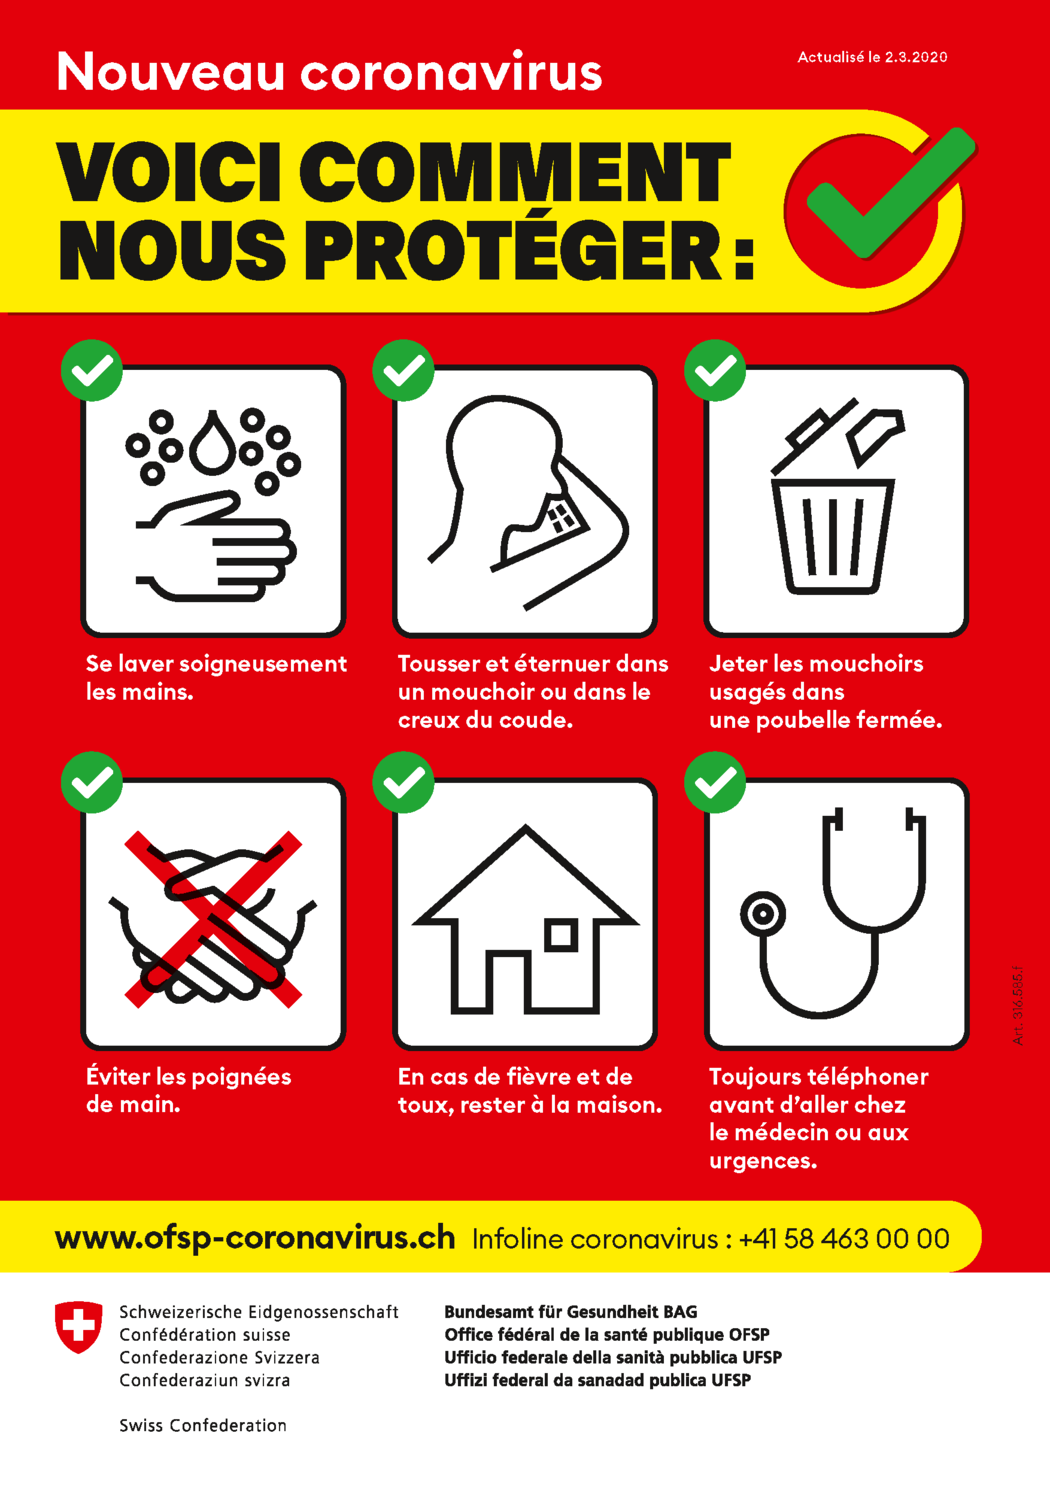 affiche_nouveau_coronavirus_voici_comment_nous_proteger.png